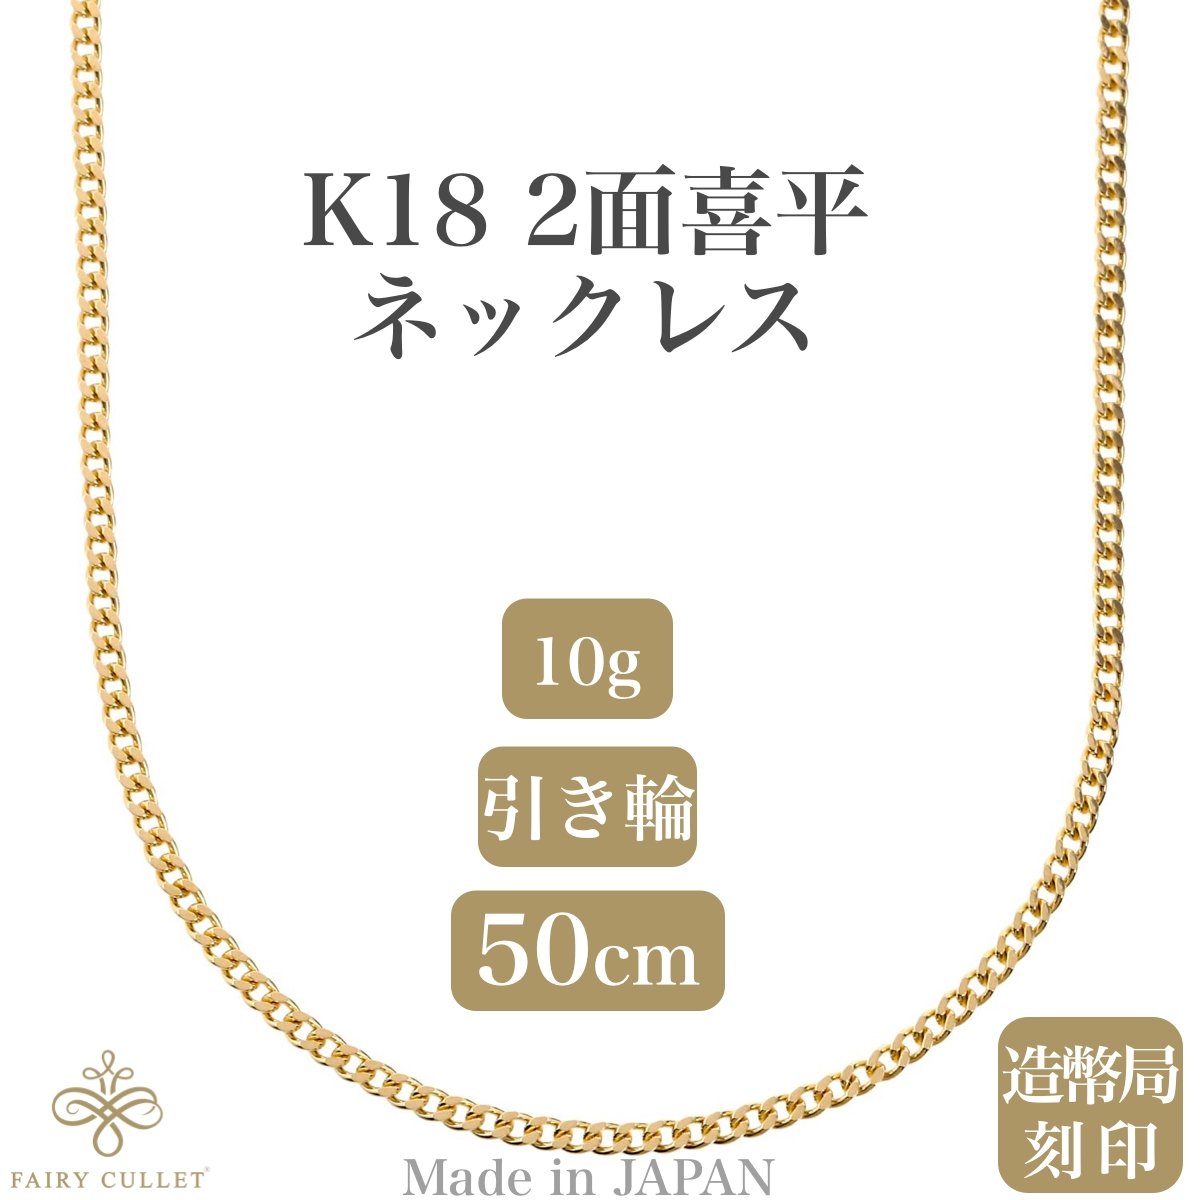 フェアリーカレット] 18金ネックレス K18 2面喜平チェーン 日本製 検定